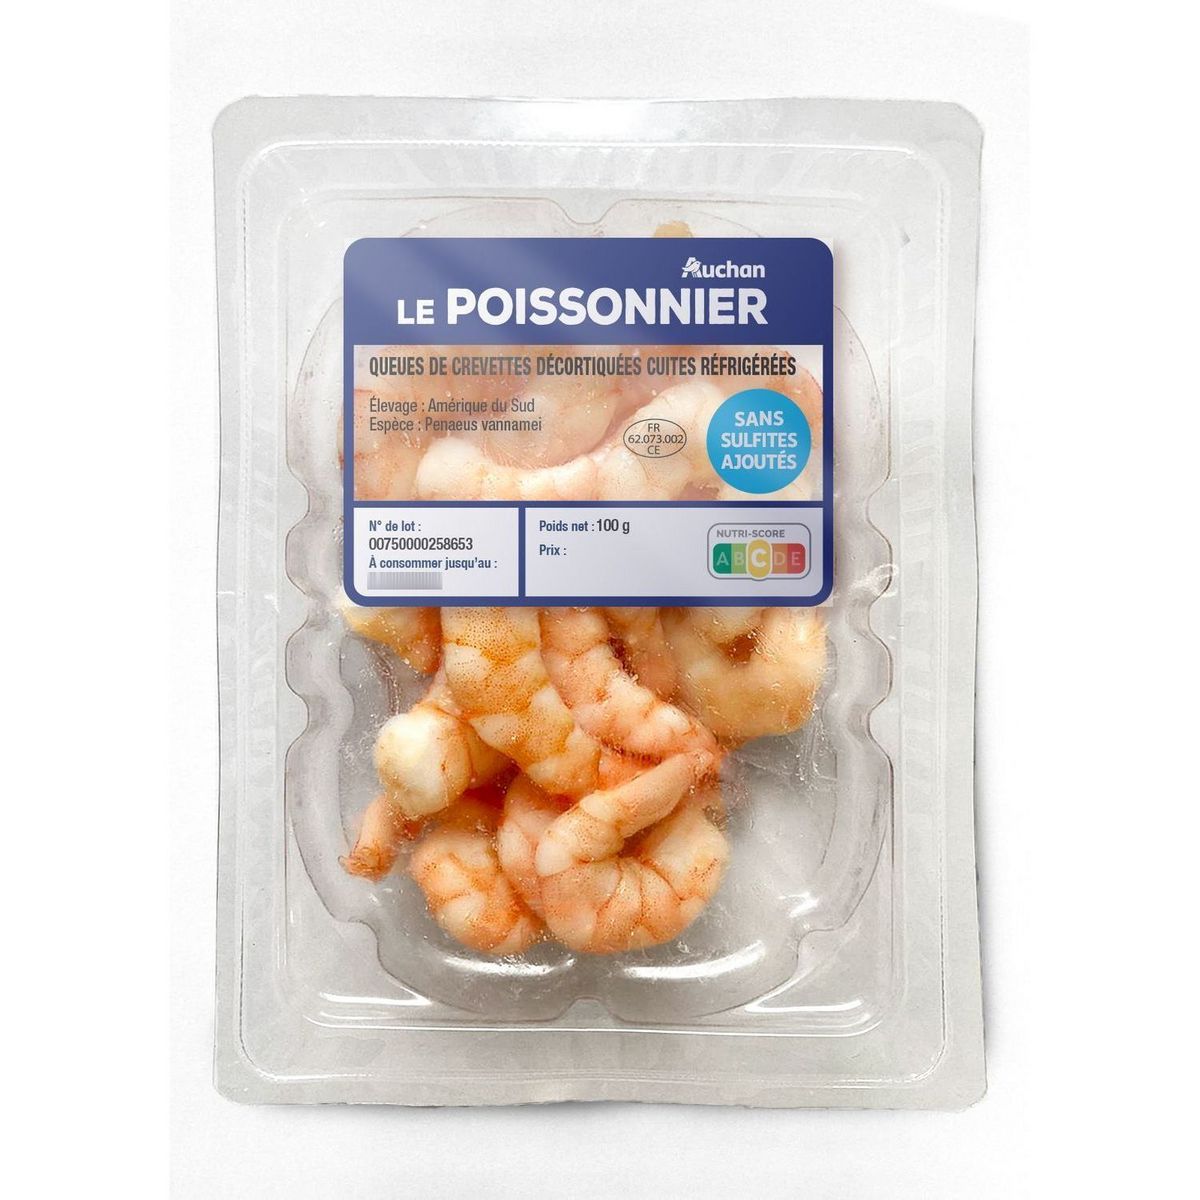 AUCHAN LE POISSONNIER Queues de crevettes décortiquées cuites réfrigérées 100g